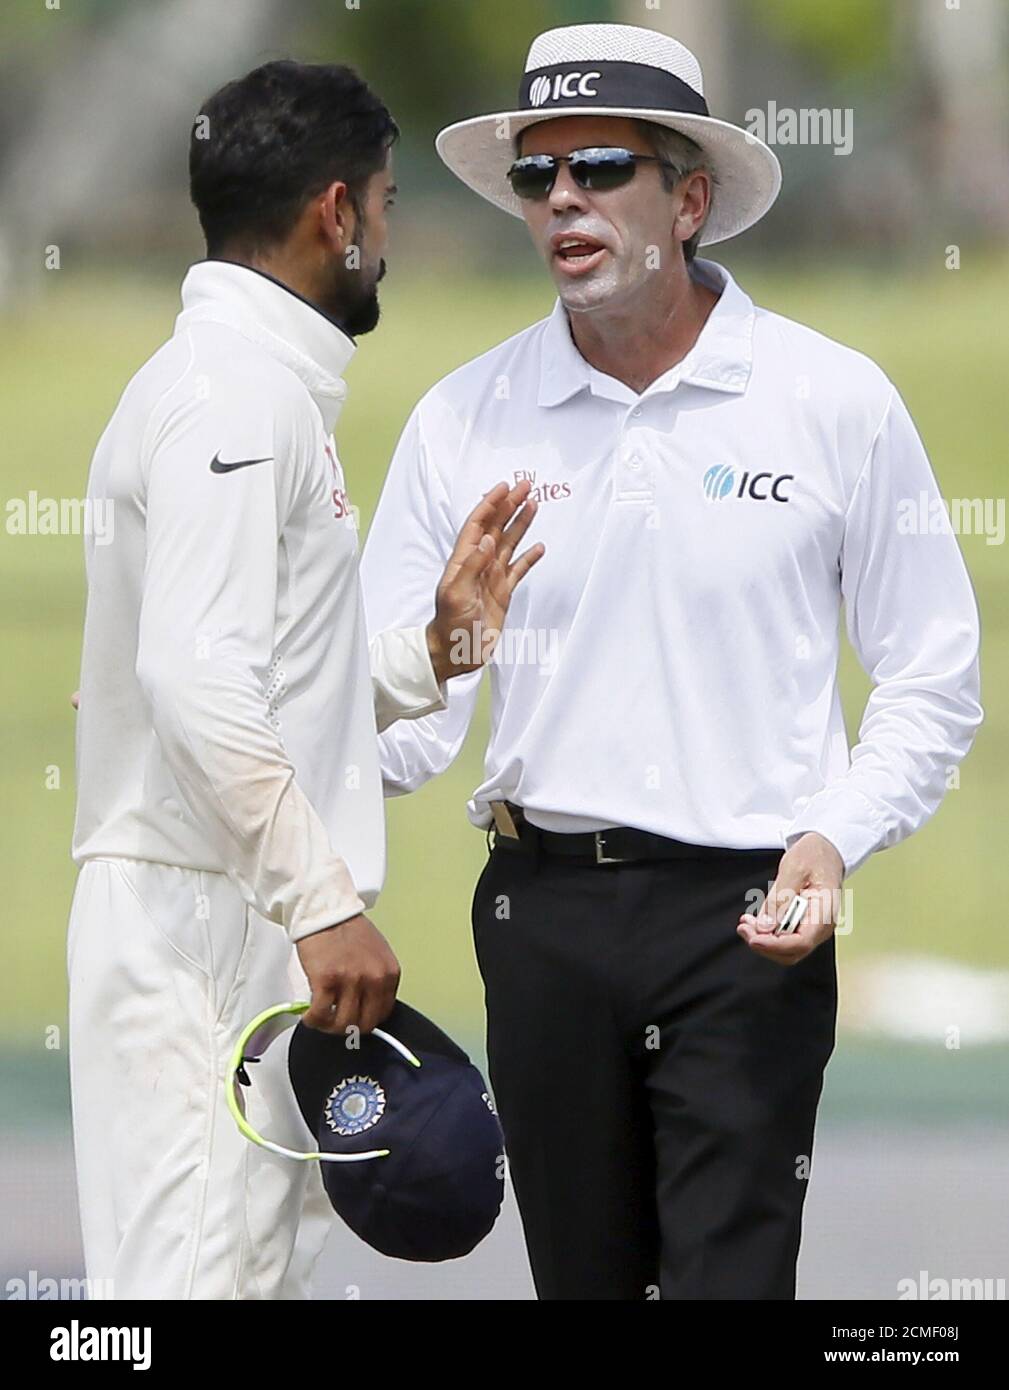 Le capitaine indien Vilat Kohli (L) s'entretient avec l'arbitre Nigel Llong au cours de la dernière journée de leur troisième et dernier match de cricket d'essai contre le Sri Lanka à Colombo, le 1er septembre 2015. REUTERS/Dinuka Liyanawatte Banque D'Images